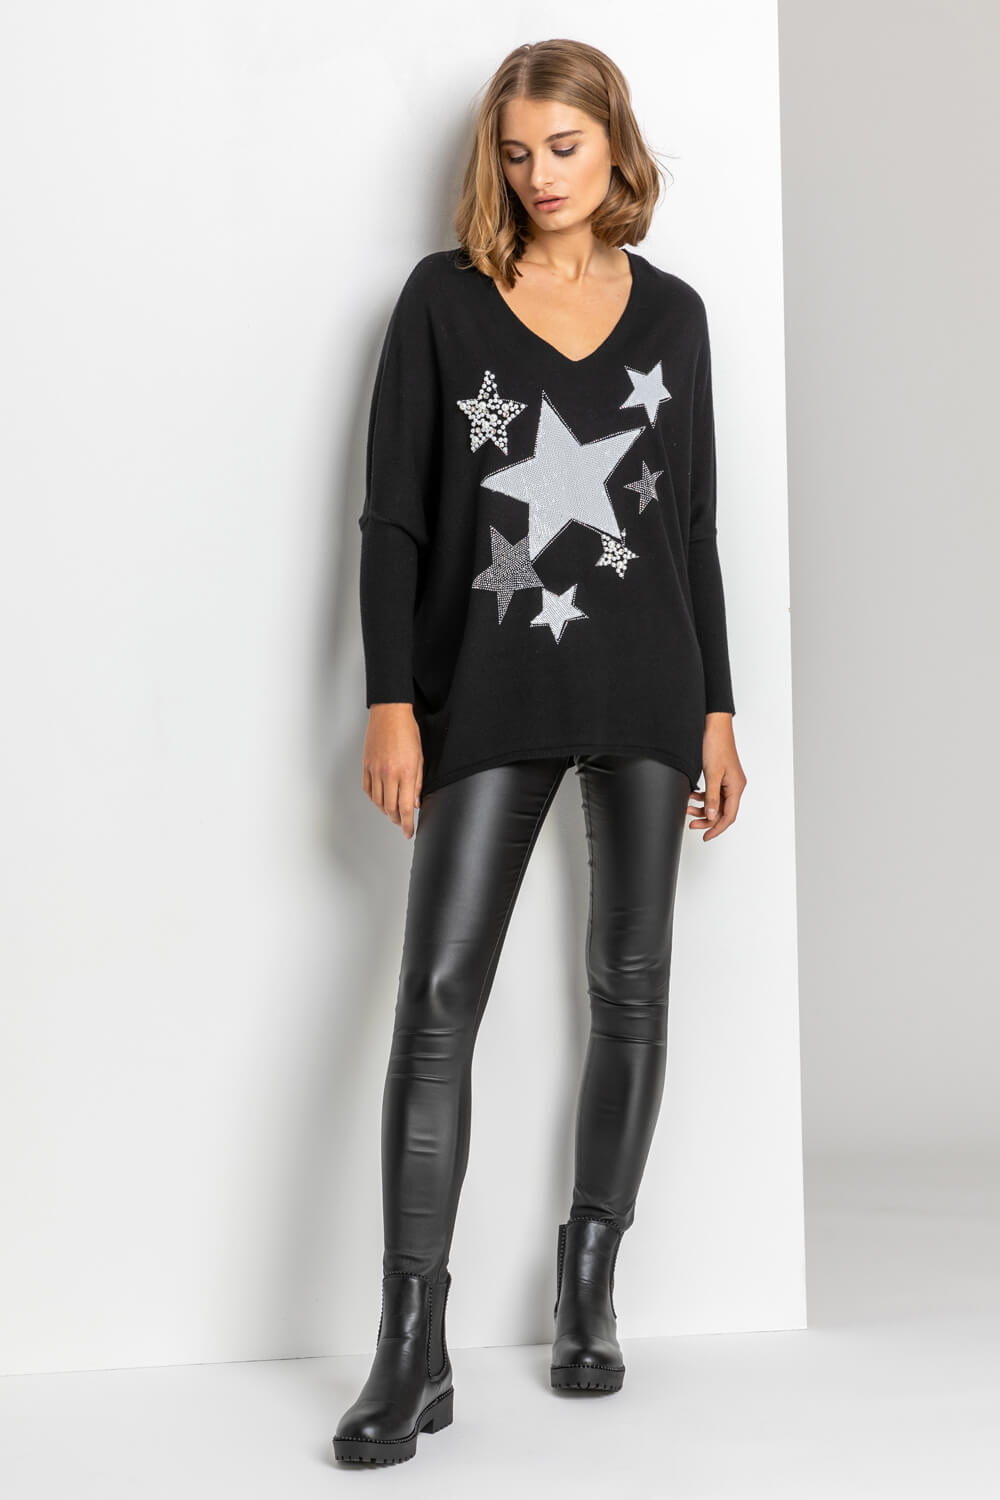 Black Sparkle Star Embellished Comfy Top, Image 3 of 4